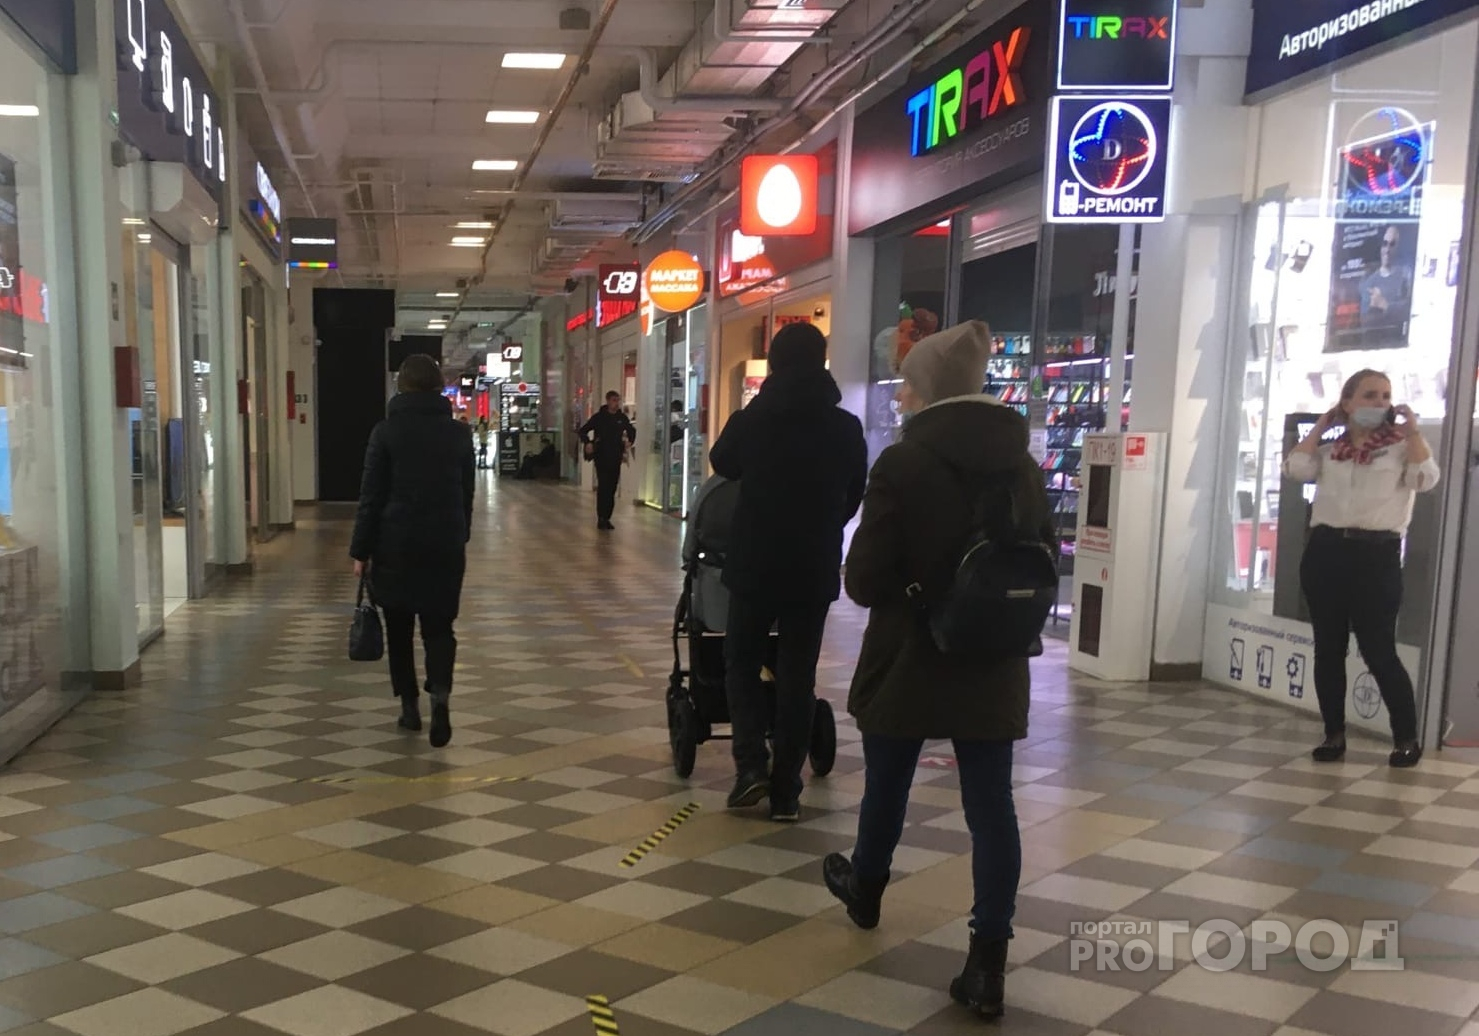 Власти Чувашии озвучили решение по крупным торговым центрам и кафе: будут ли они работать с 30 октября по 7 ноября